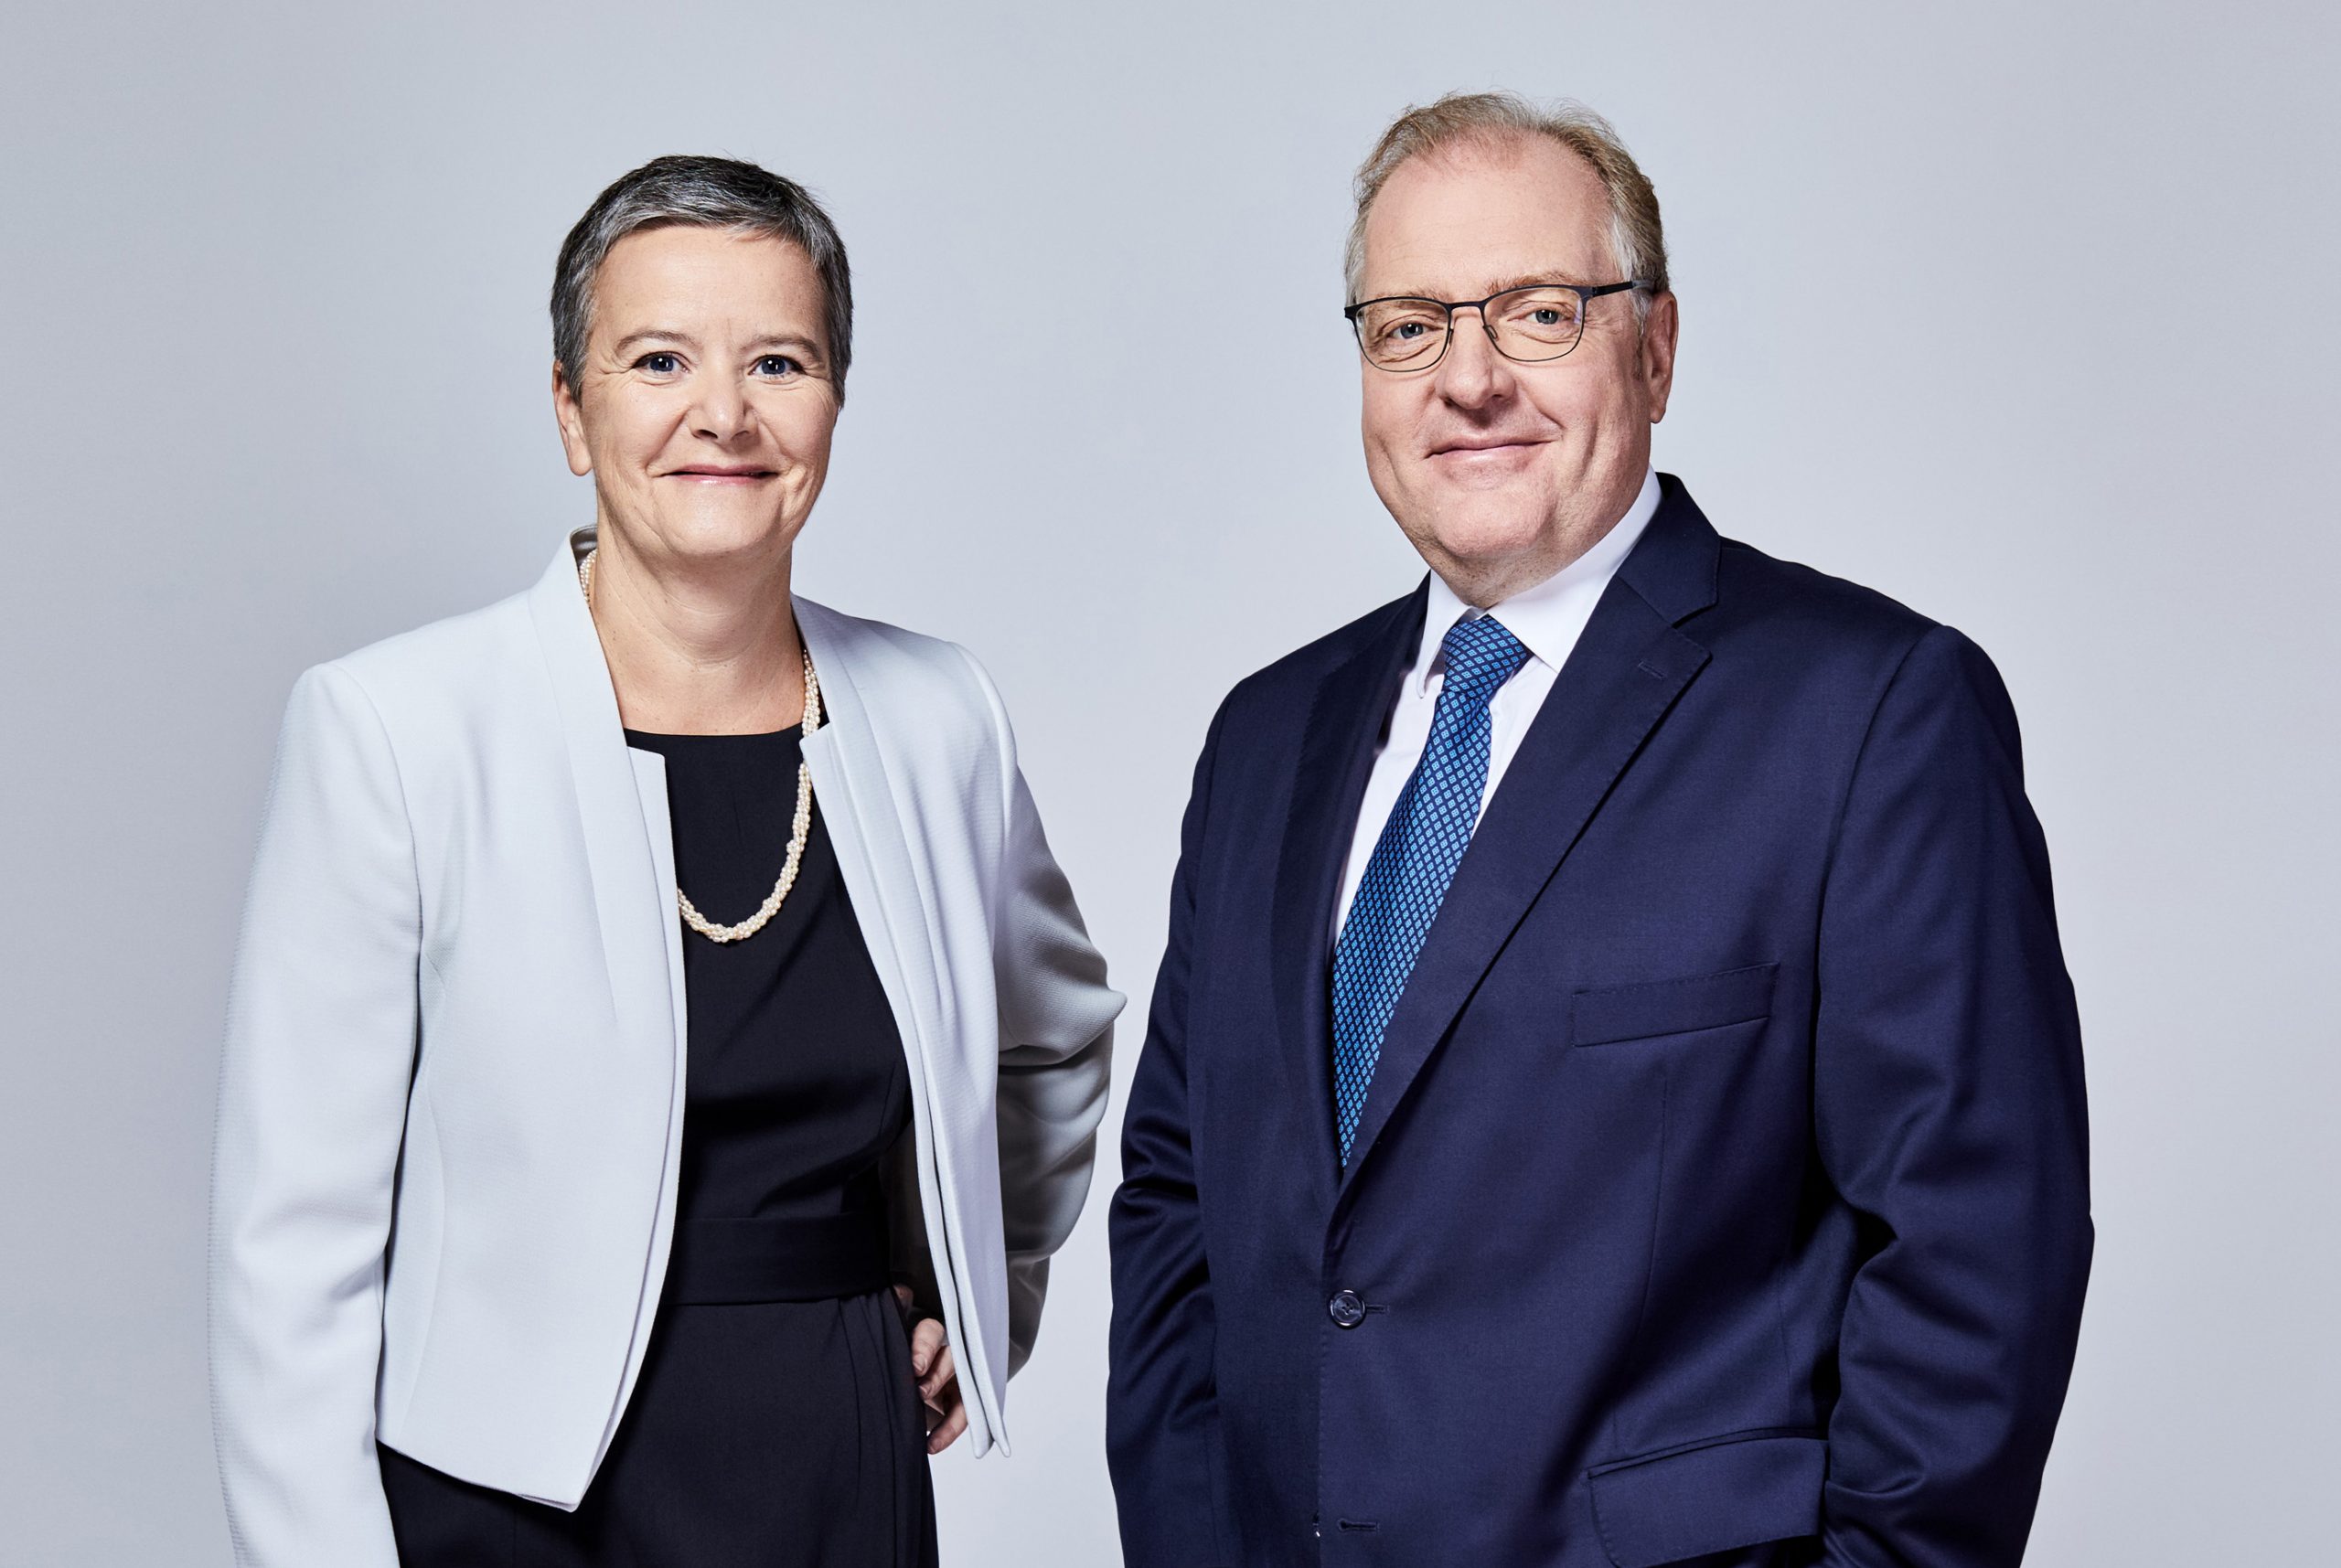 Jubiläum: Seit 75 Jahren stärkt die Oesterreichische Kontrollbank unseren Wirtschaftsstandort